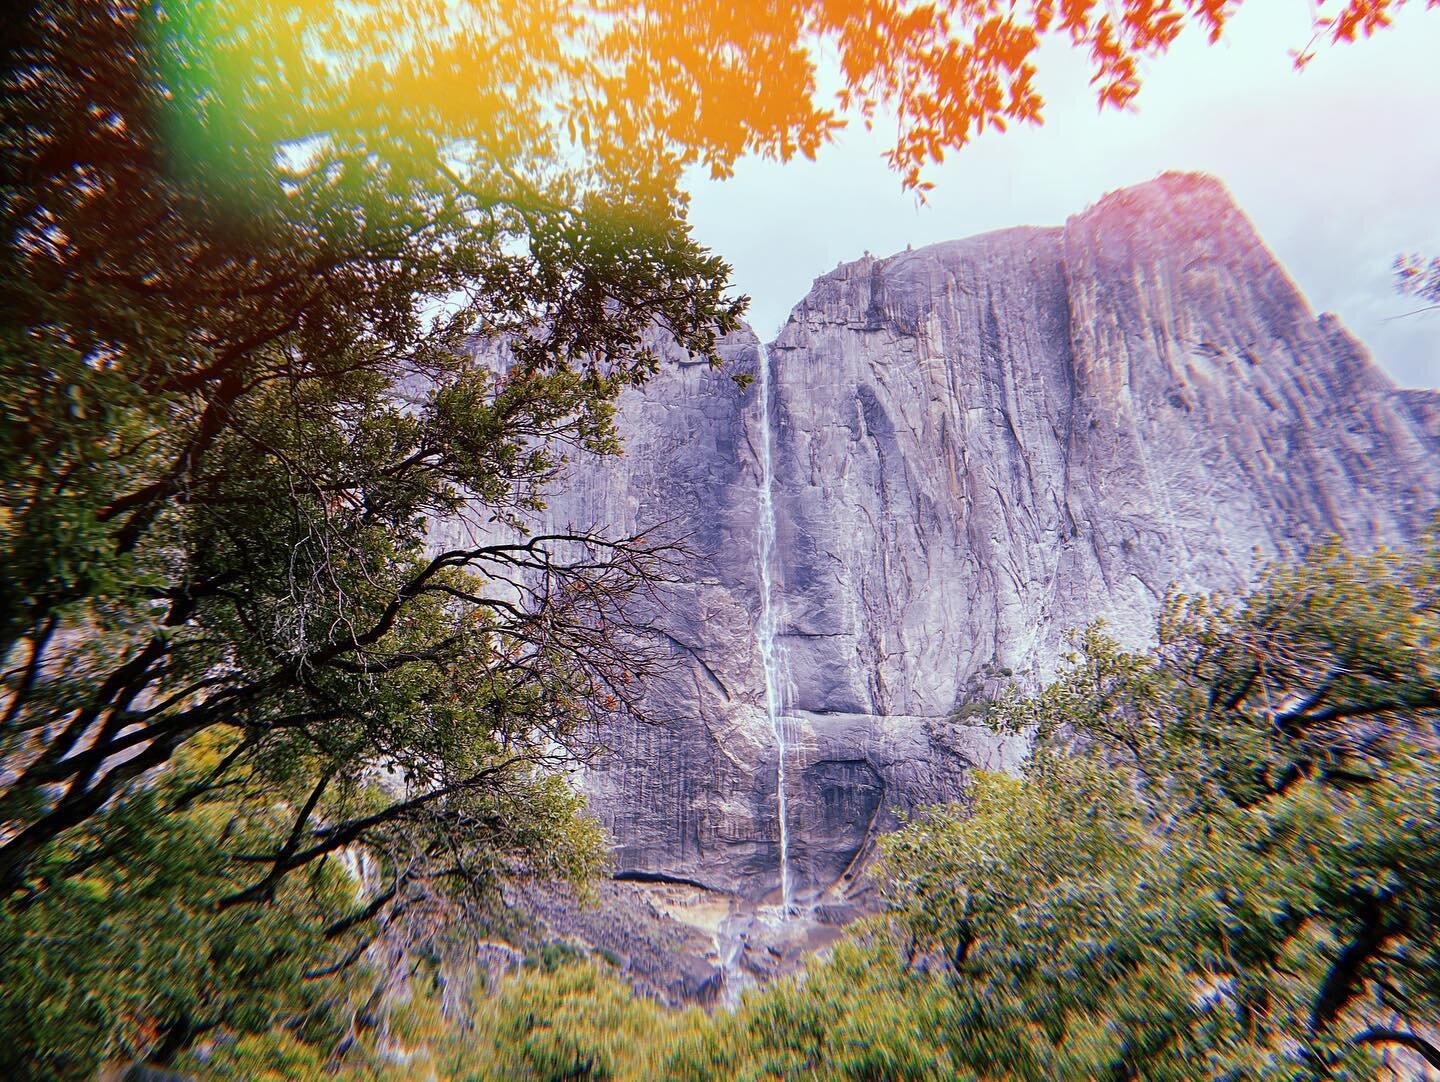 ⛰Yosemite Falls - Yosemite National Park⛰
&bull;
🇪🇸
Nos dejamos llevar. &ldquo;&iquest;Hacemos una ruta?&rdquo; y entonces empezamos a caminar. Cre&iacute;amos que nos llevar&iacute;a cerca de la cascada de Yosemite, pero nada m&aacute;s all&aacute